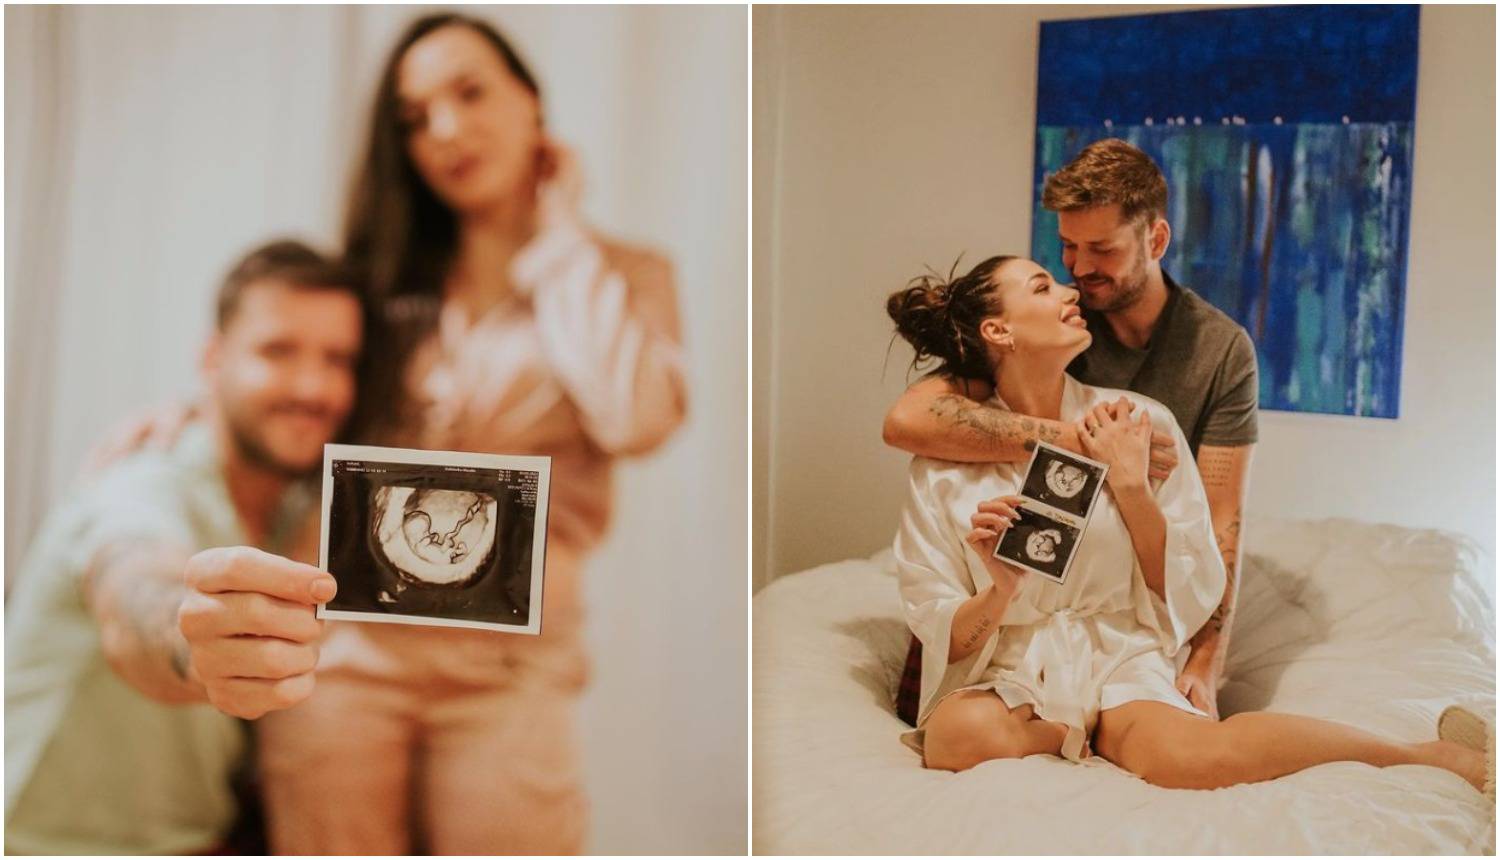 Pego iz 'Plesa' objavio fotke s ultrazvuka nakon objave da je Cindy trudna: 'Ća ća Sandi'